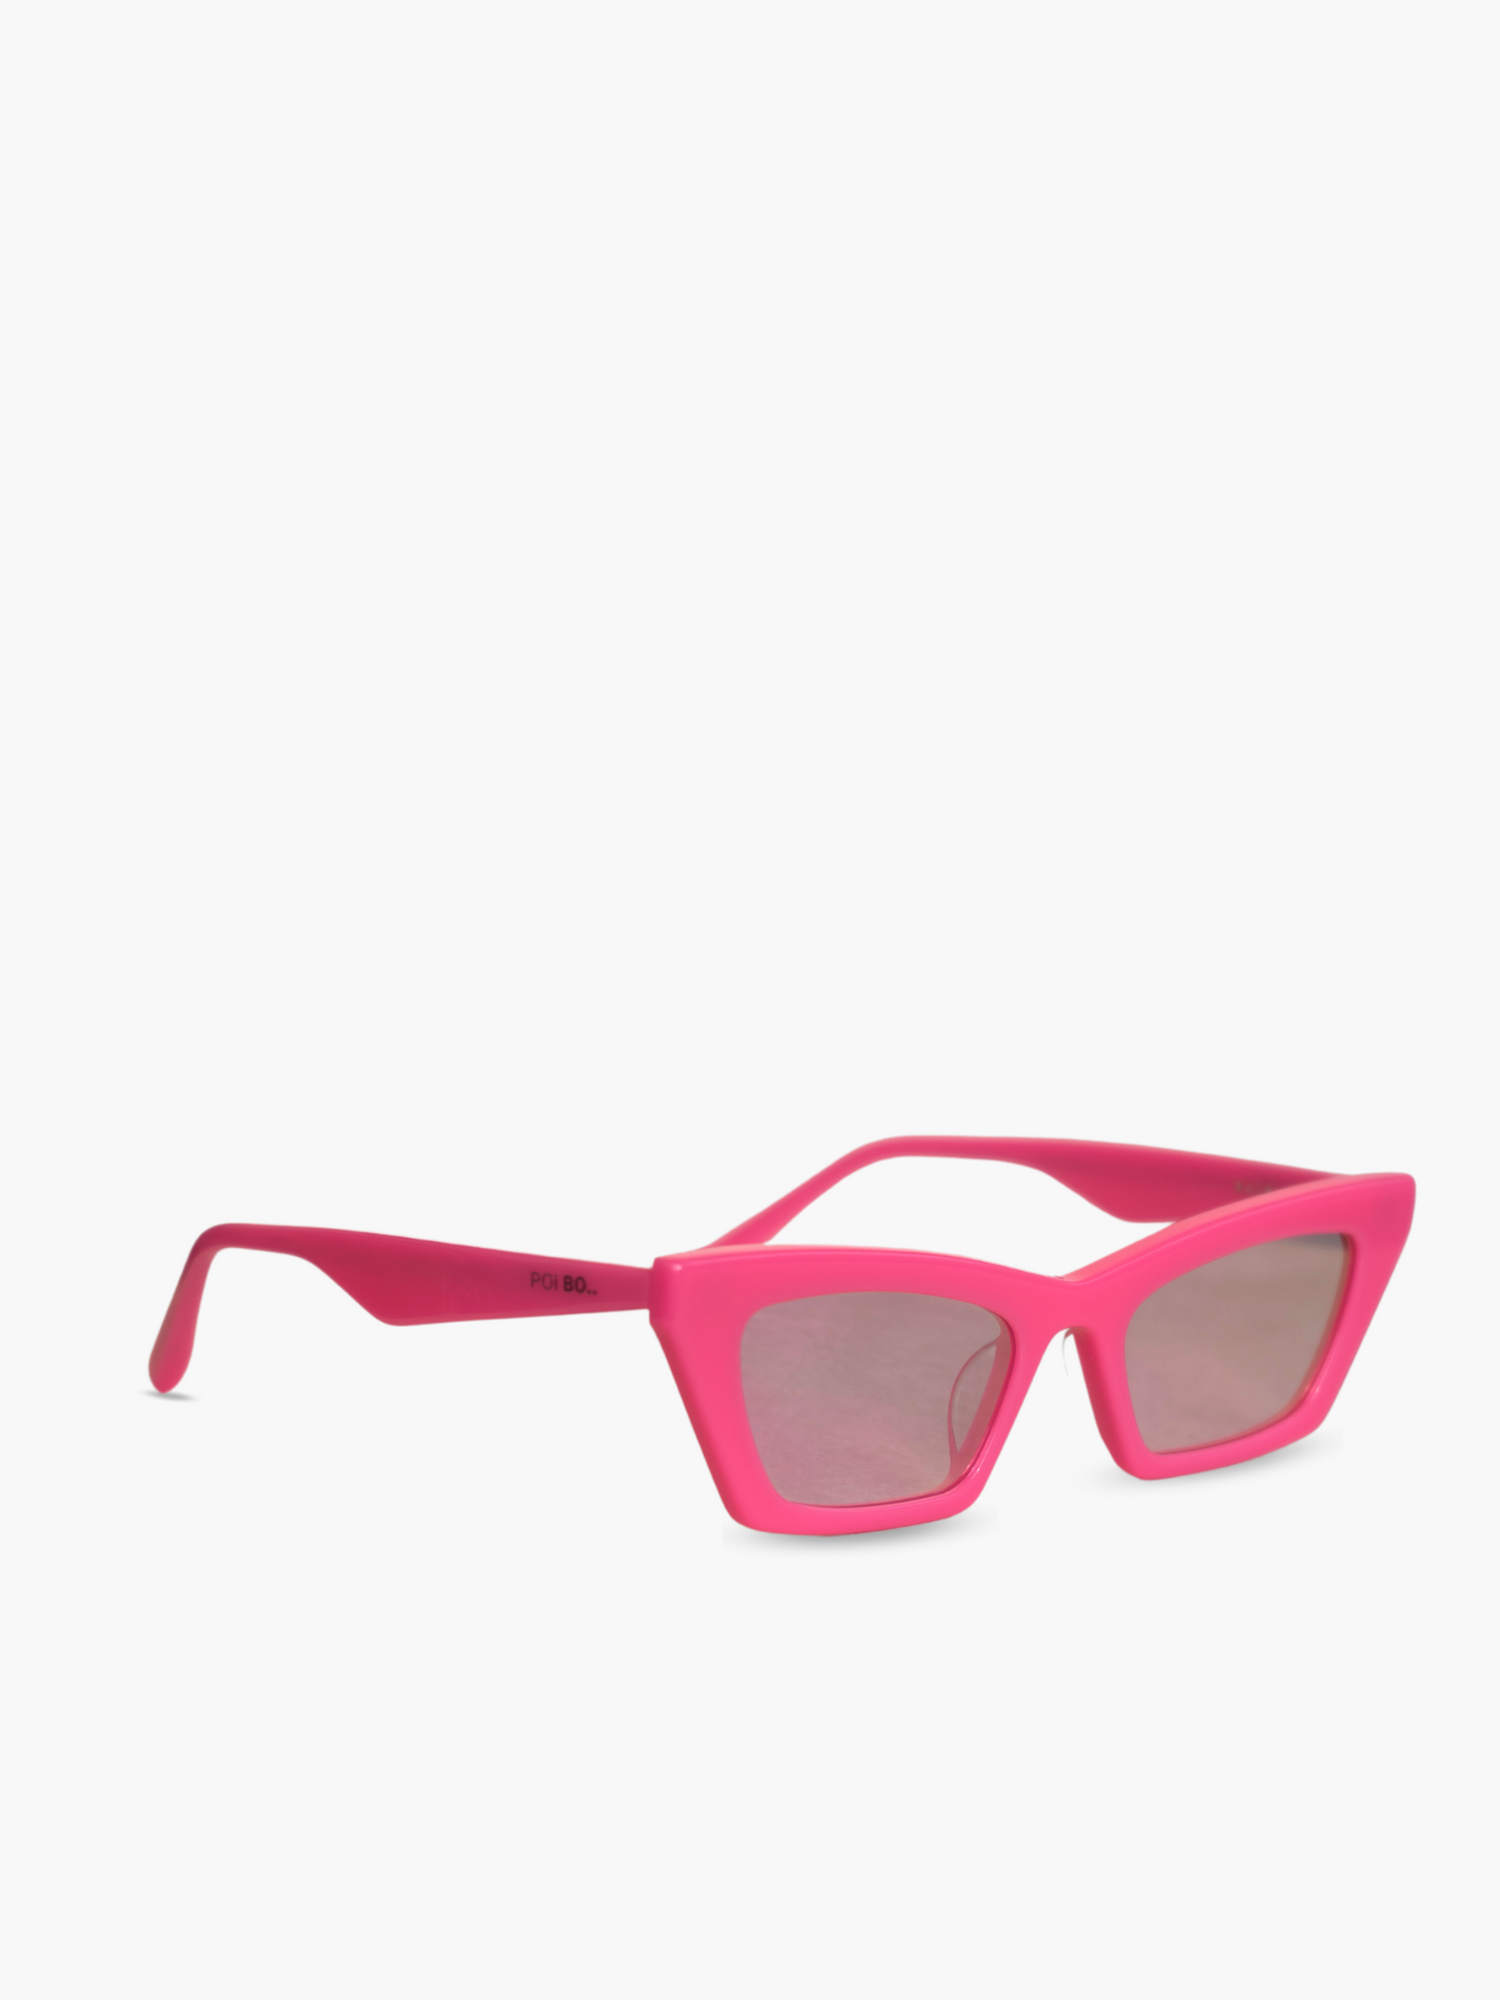 Occhiali da sole montatura color rosa acceso con lenti specchiate con riflesso rosa. Unisex e adatto alla maggior parte delle forme del viso. Le lenti sono antiriflesso e con protezione UV.